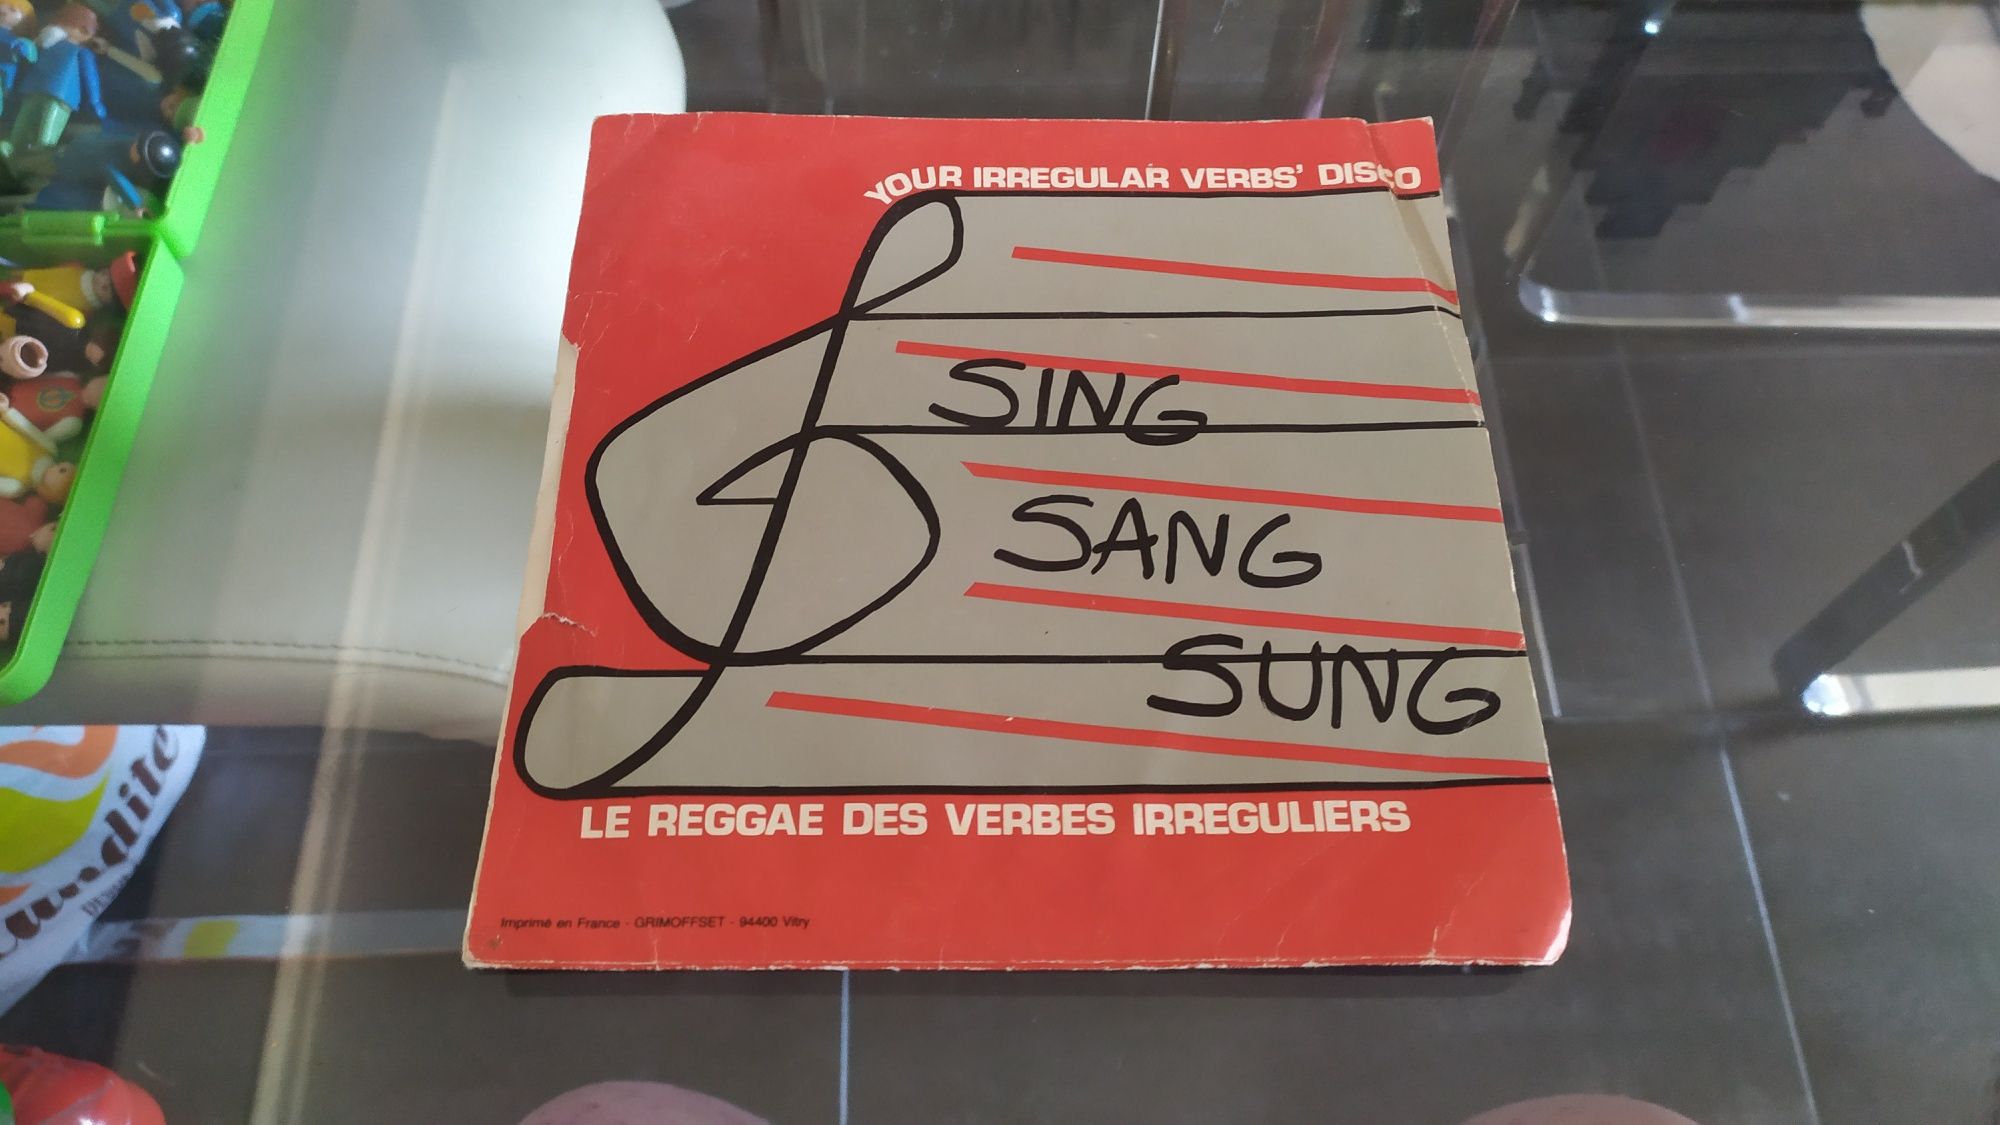 Sing Sang sung le reggae des verbes irregulares LP